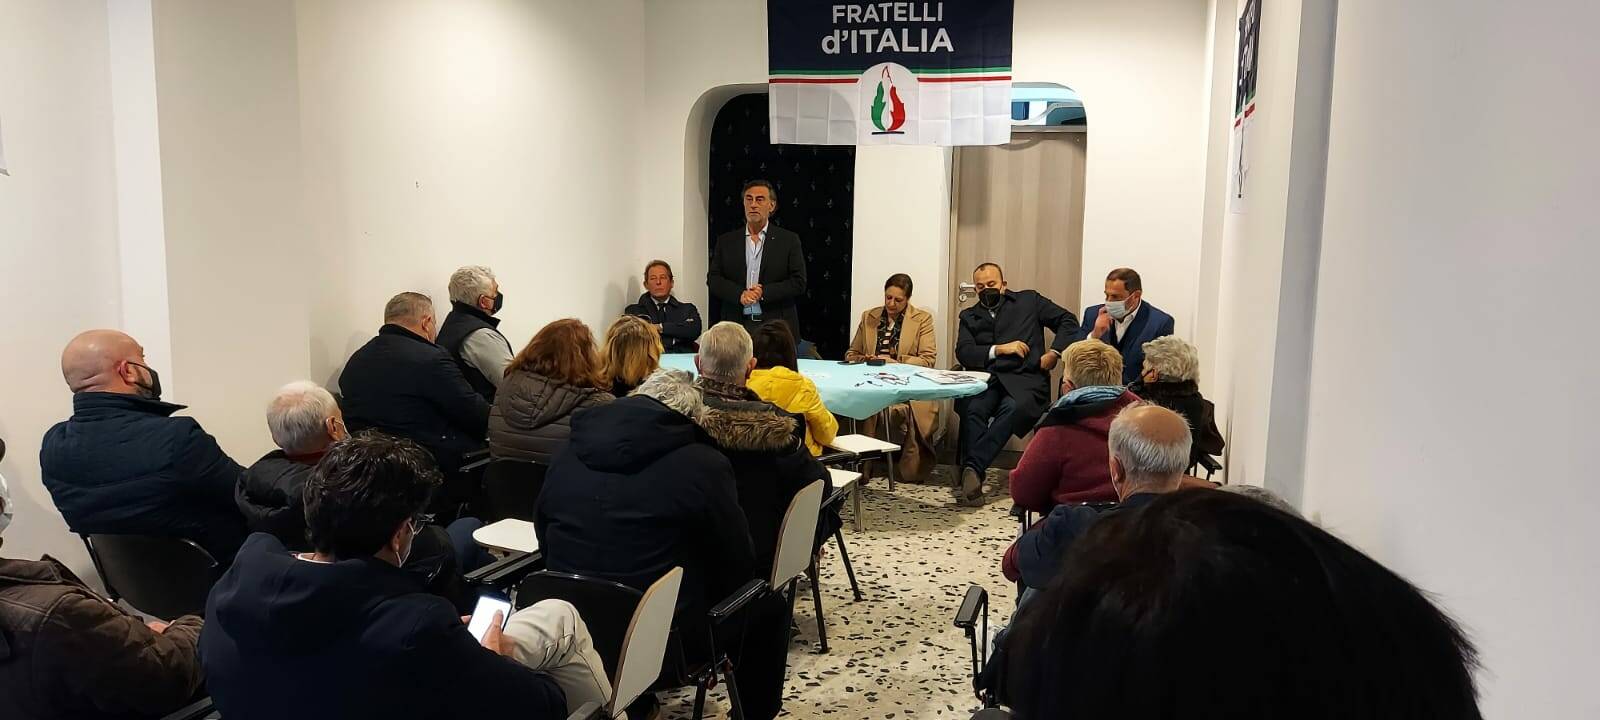 Ladispoli, Silvestroni: “Fratelli d’Italia dà il benvenuto alla Asciutto e Sini”